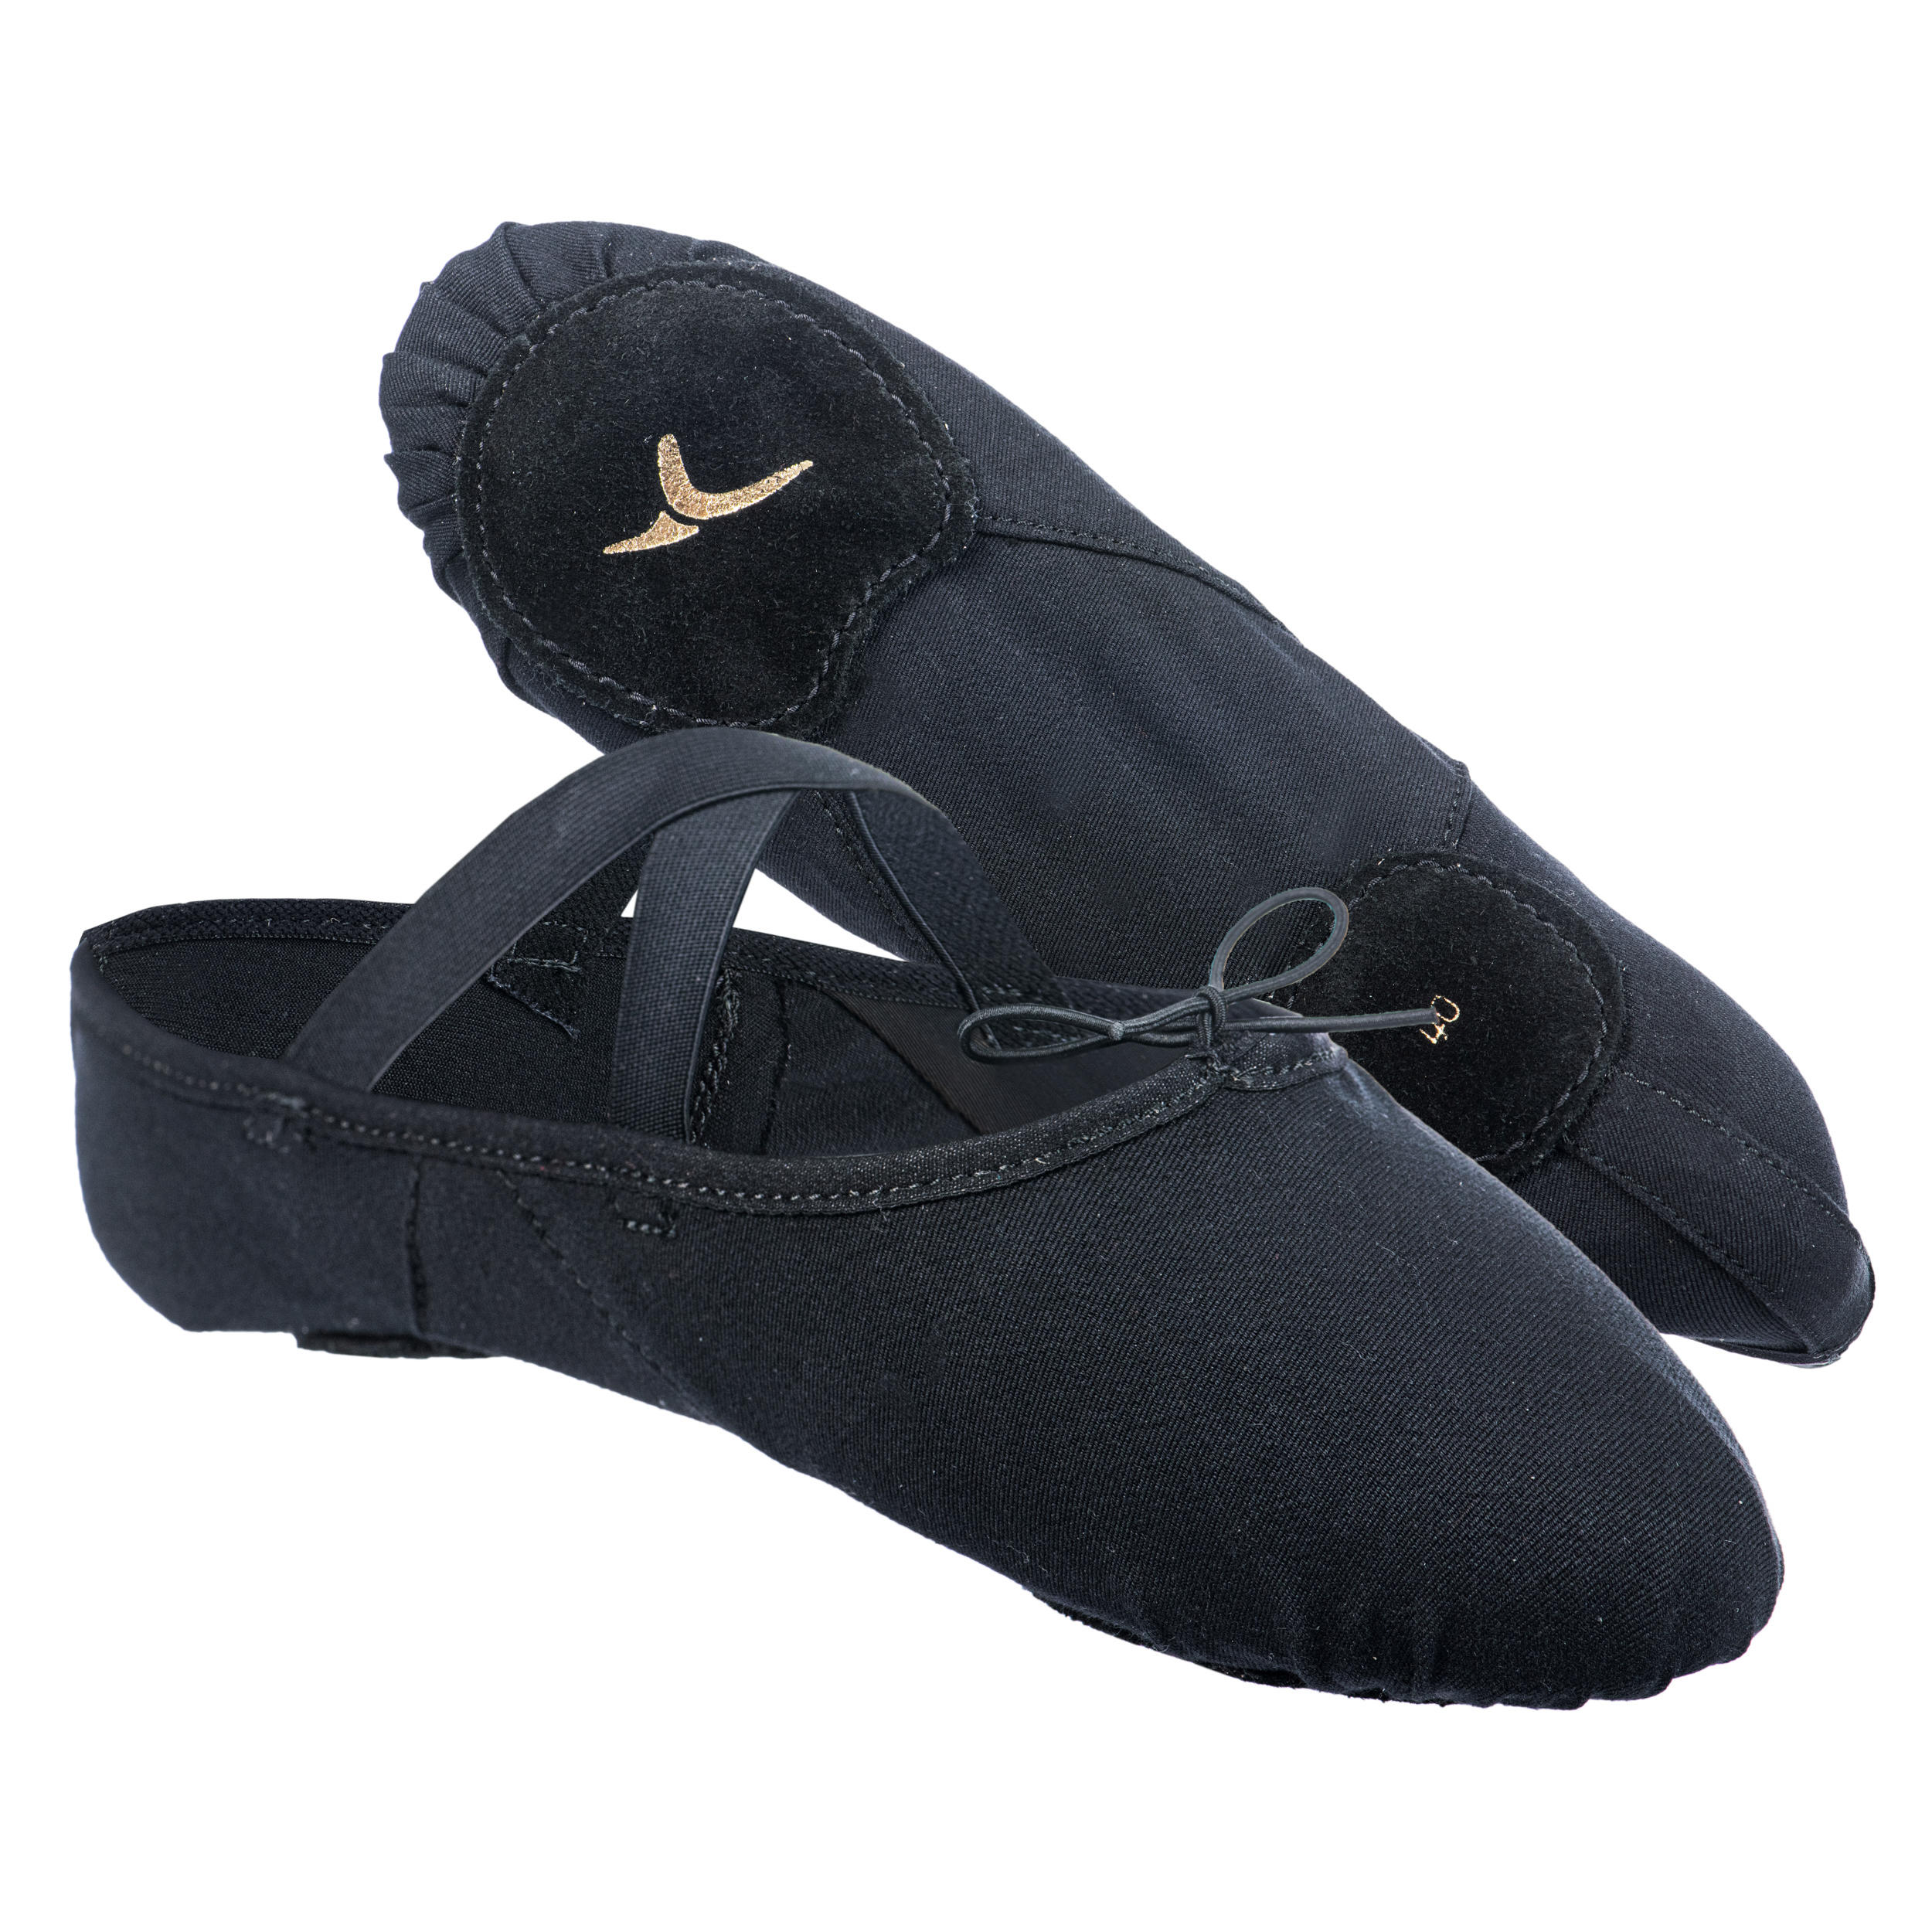 Stretch Canvas Split-Sole Demi-Pointe Ballet Shoes Size 7.5 to 8 - Black 9/10